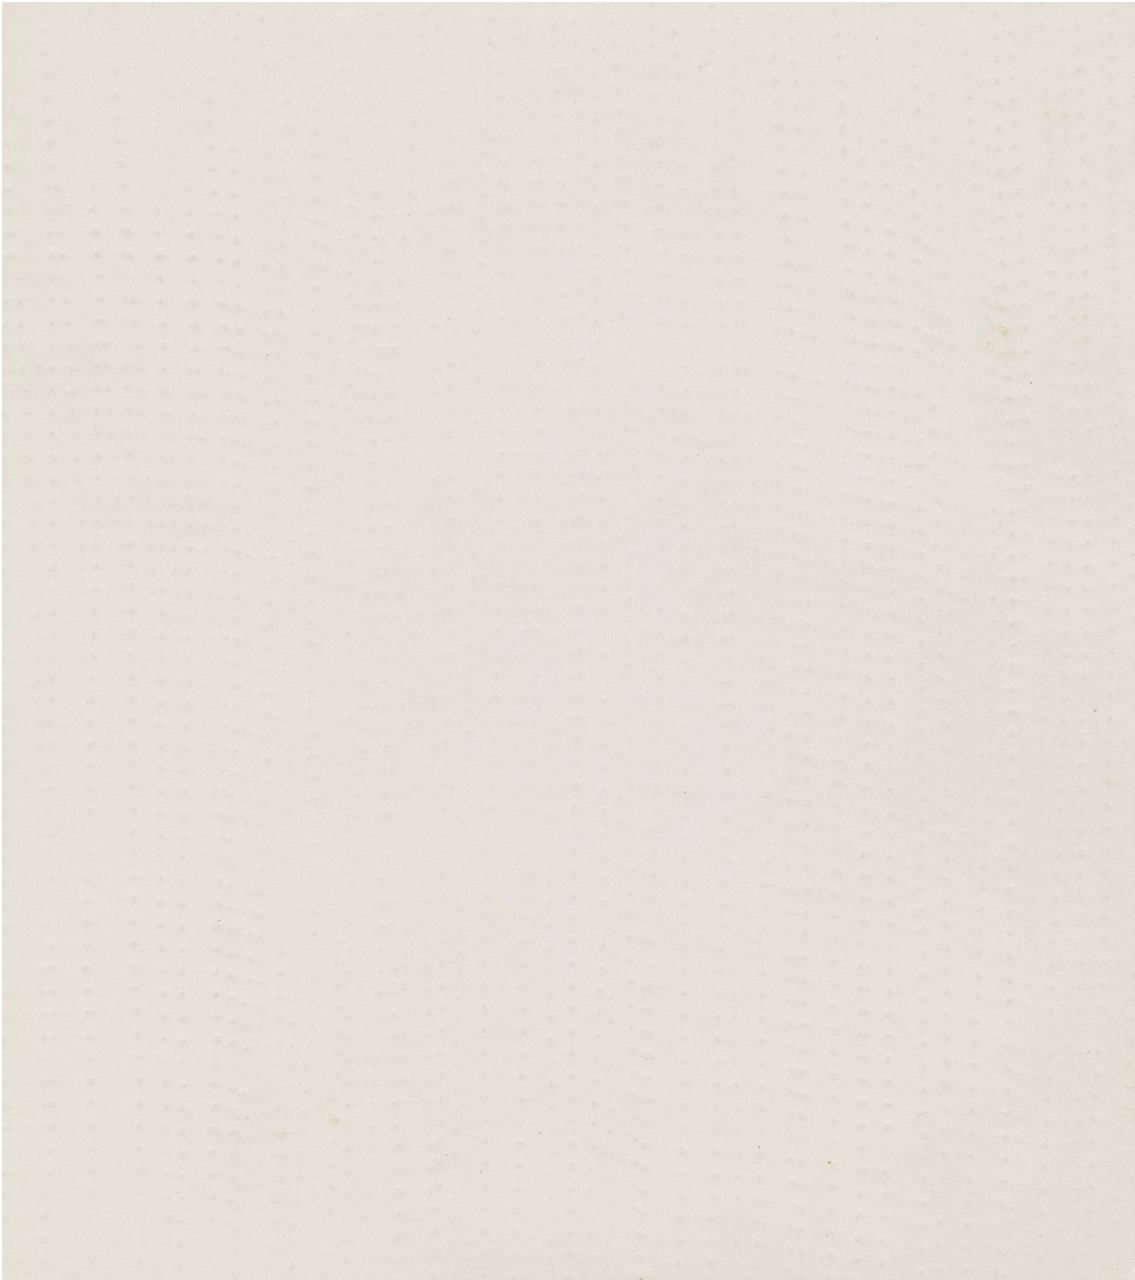 herman de vries | Ohne Titel, reliëf on paper, 12,6 x 11,2 cm, Unterzeichnet Im Verso und datiert im Verso 17 II 61